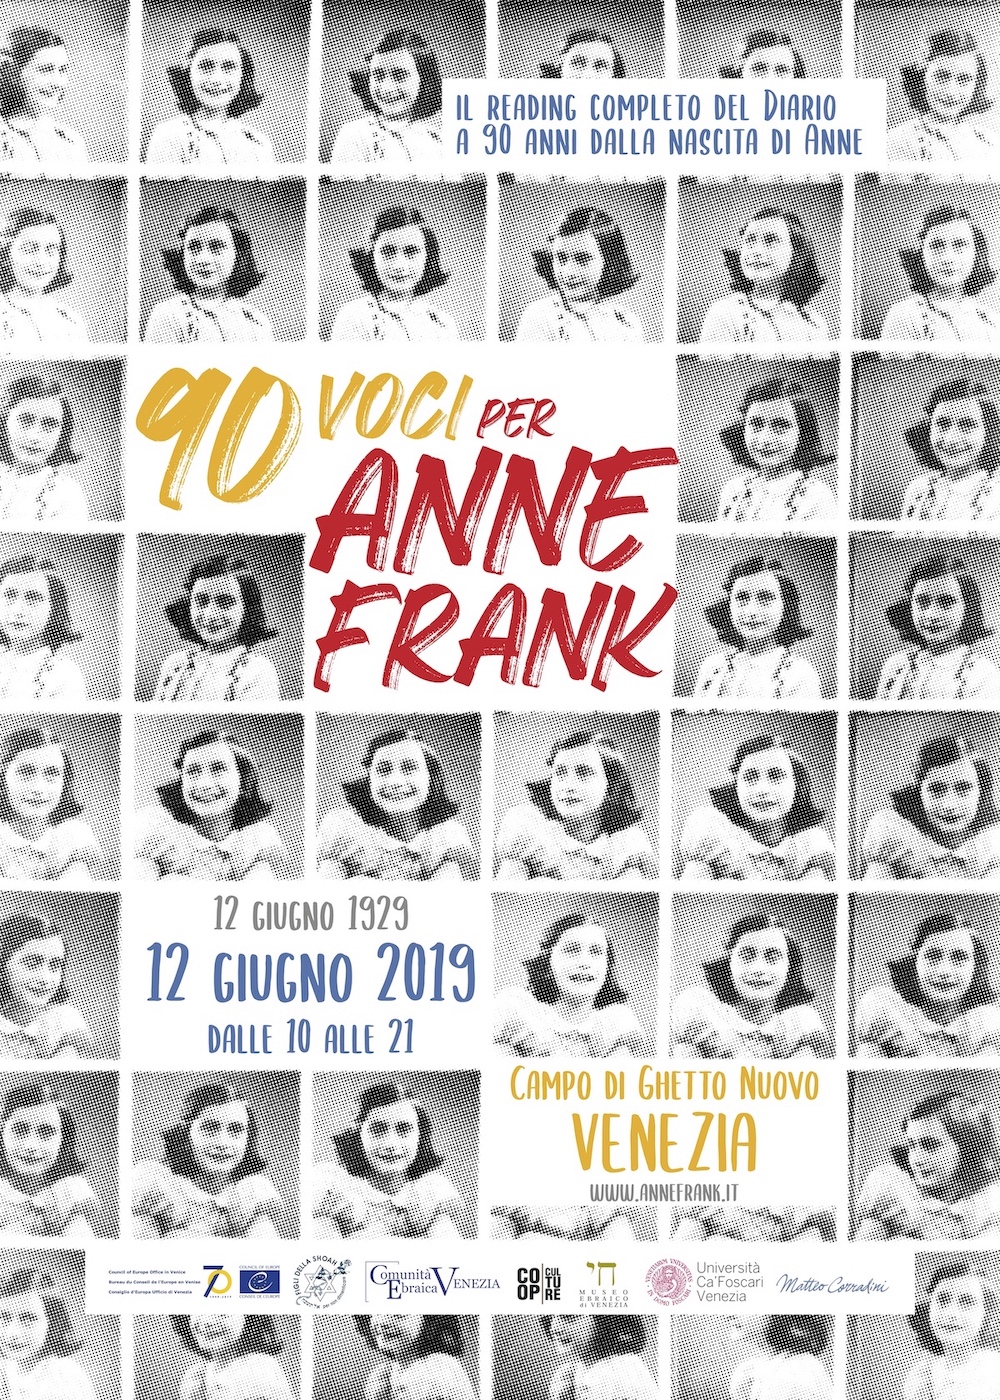 90 voci per Anne Frank